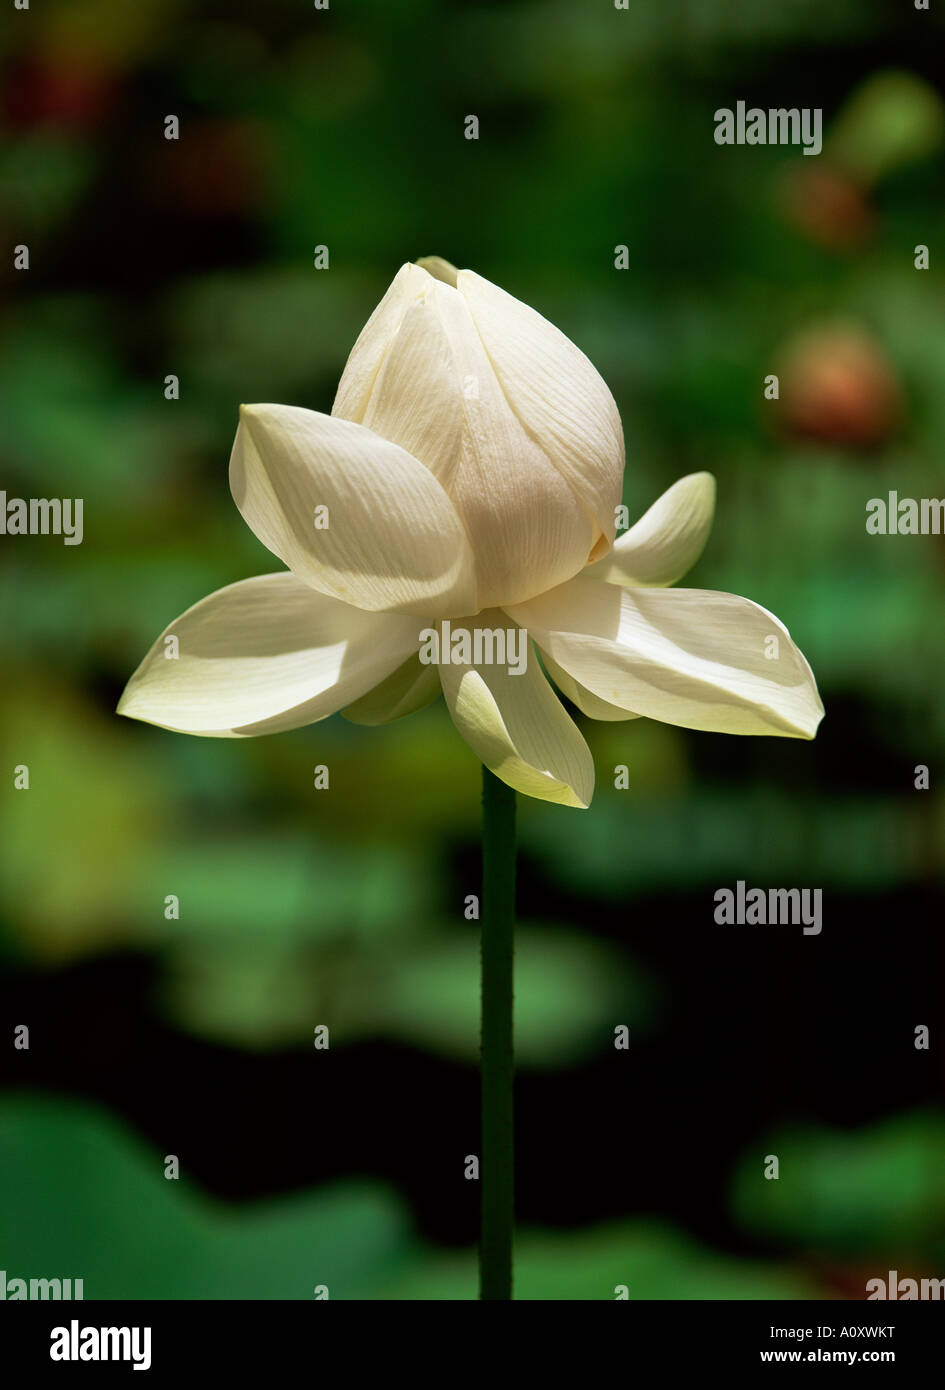 Fleur de lotus blanc Jardin Botanique de Pamplemousses Ile Maurice Afrique du Sud Banque D'Images